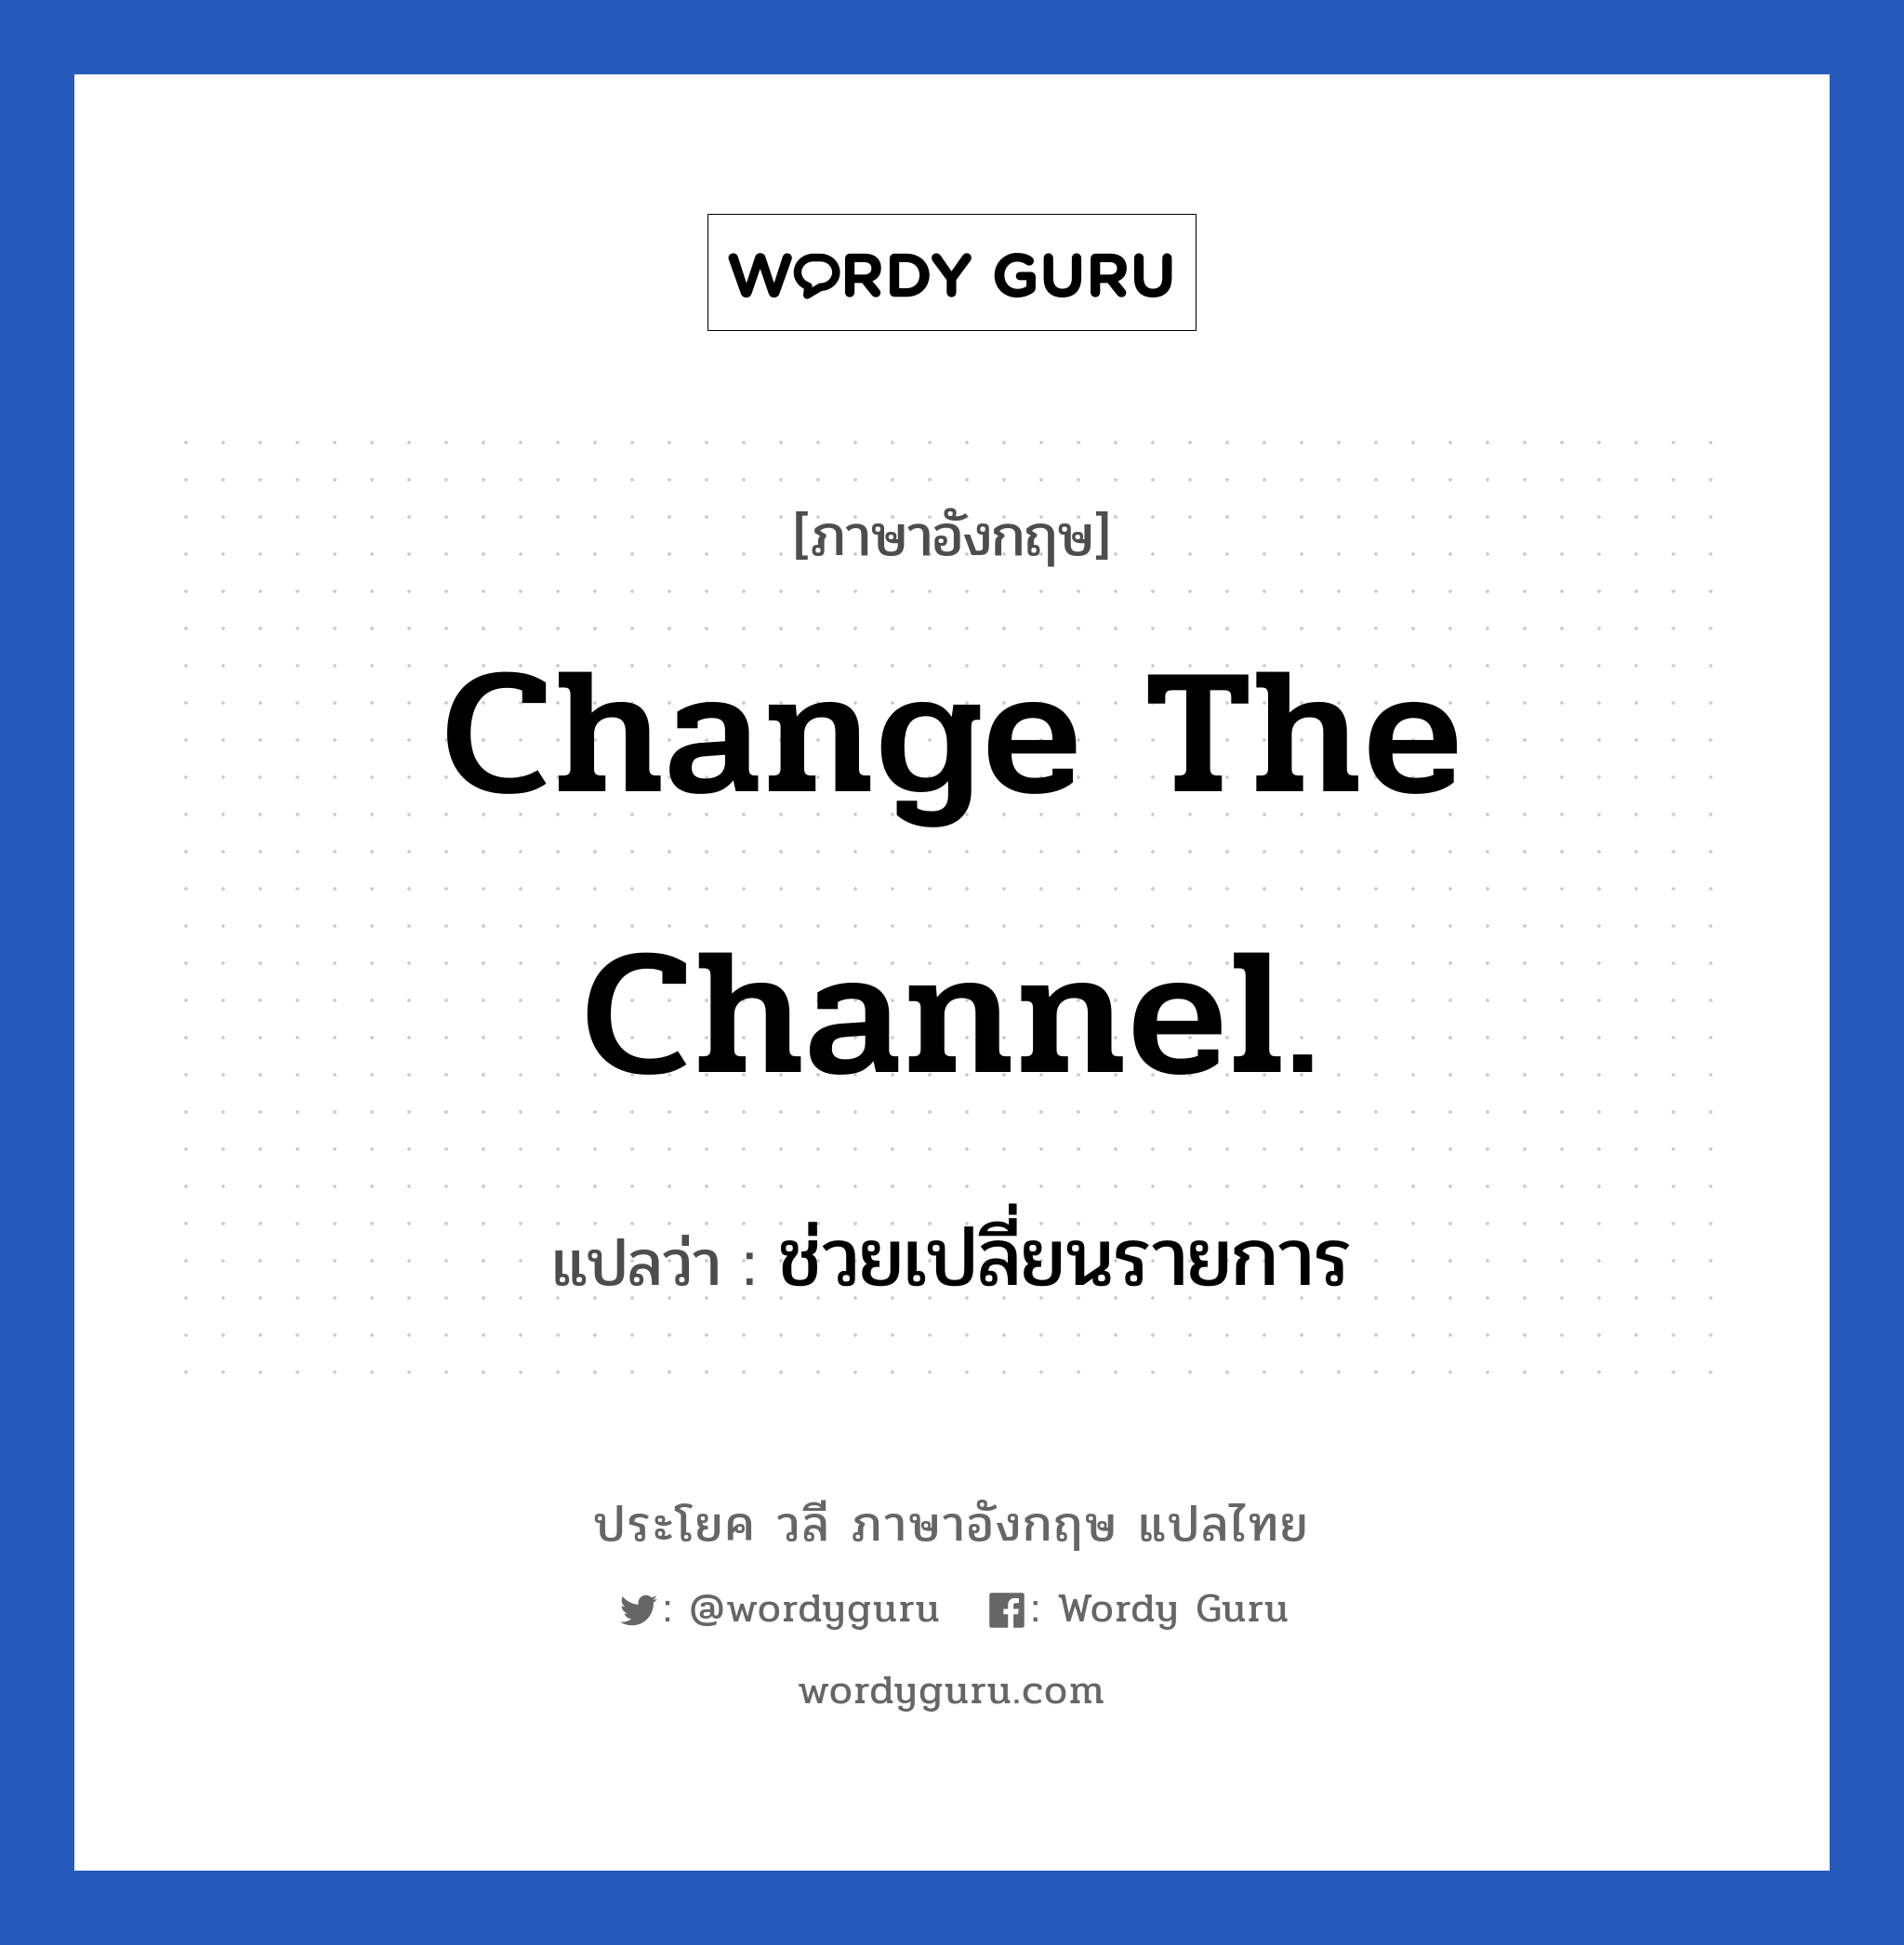 ช่วยเปลี่ยนรายการ ภาษาอังกฤษ?, วลีภาษาอังกฤษ ช่วยเปลี่ยนรายการ แปลว่า Change the channel.